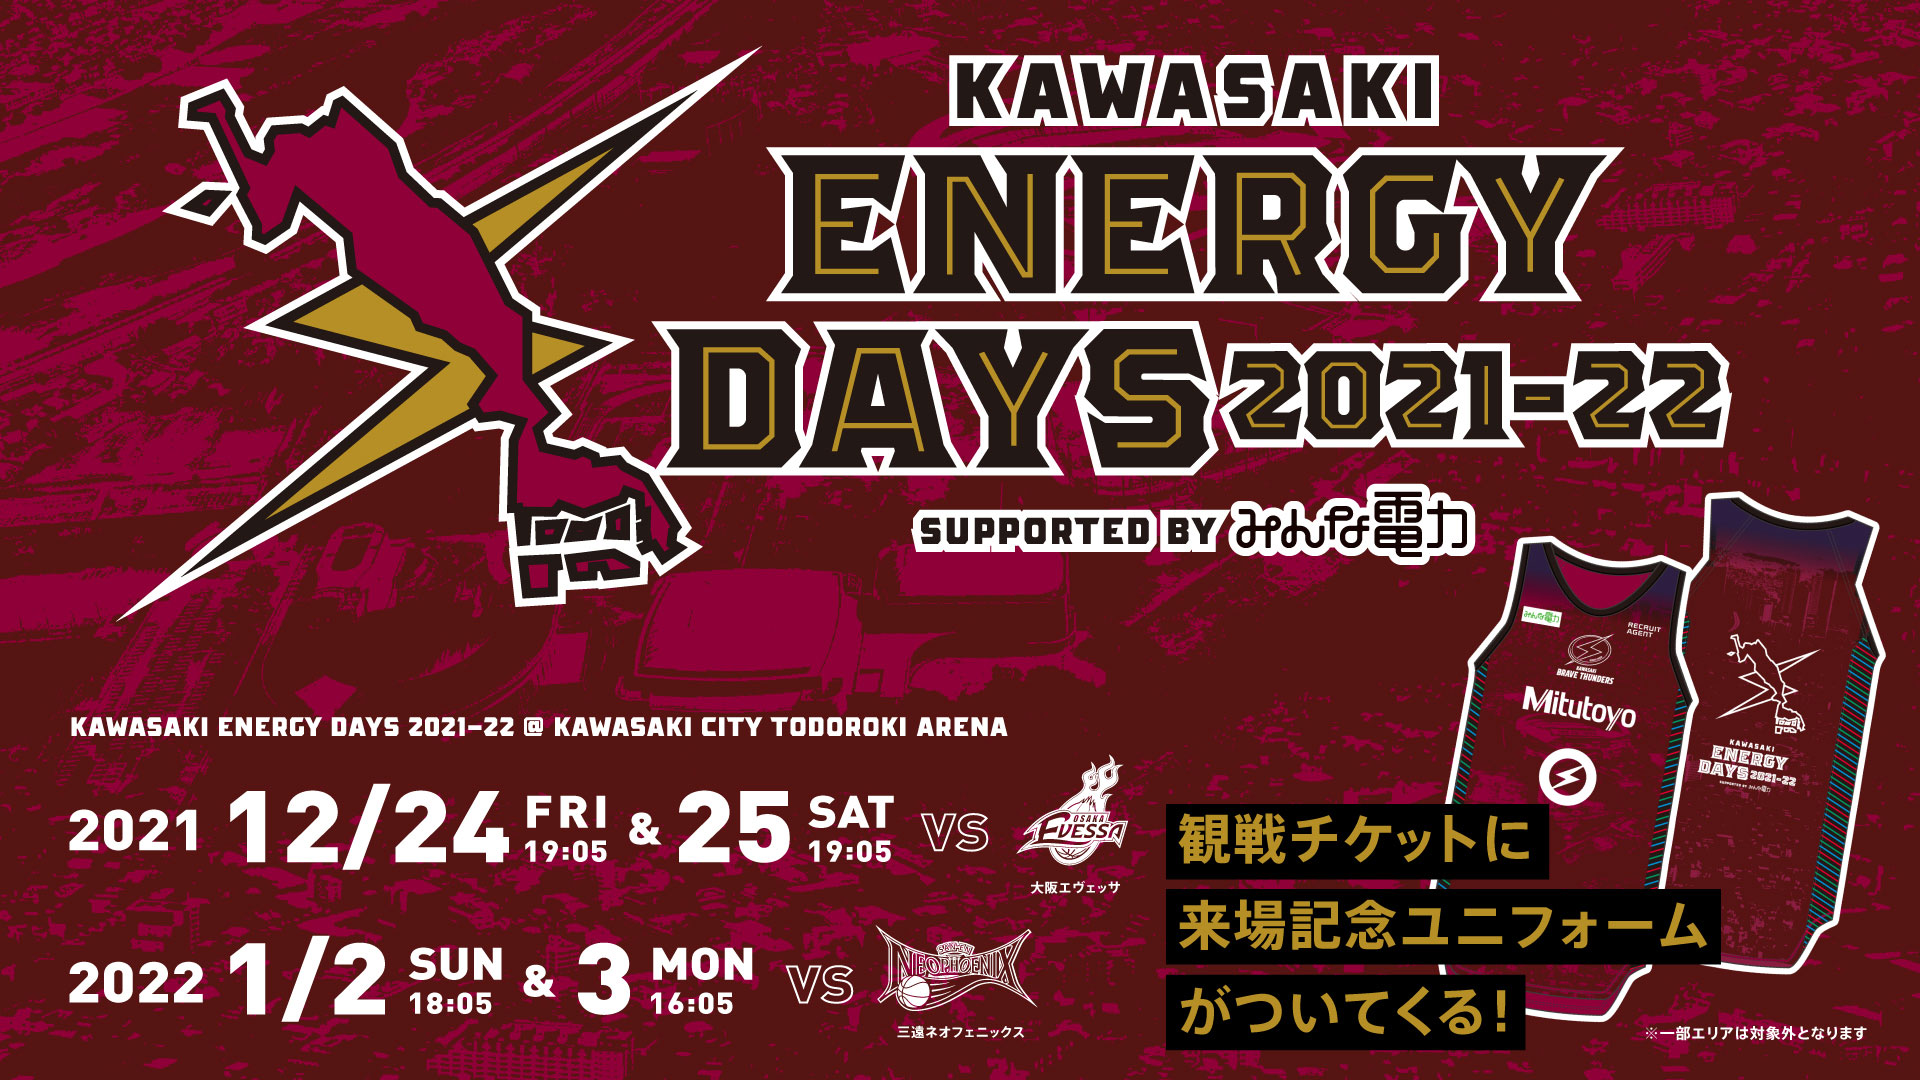 12/24,25 大阪戦・1/2,3 三遠戦「KAWASAKI ENERGY DAYS 2021-22 